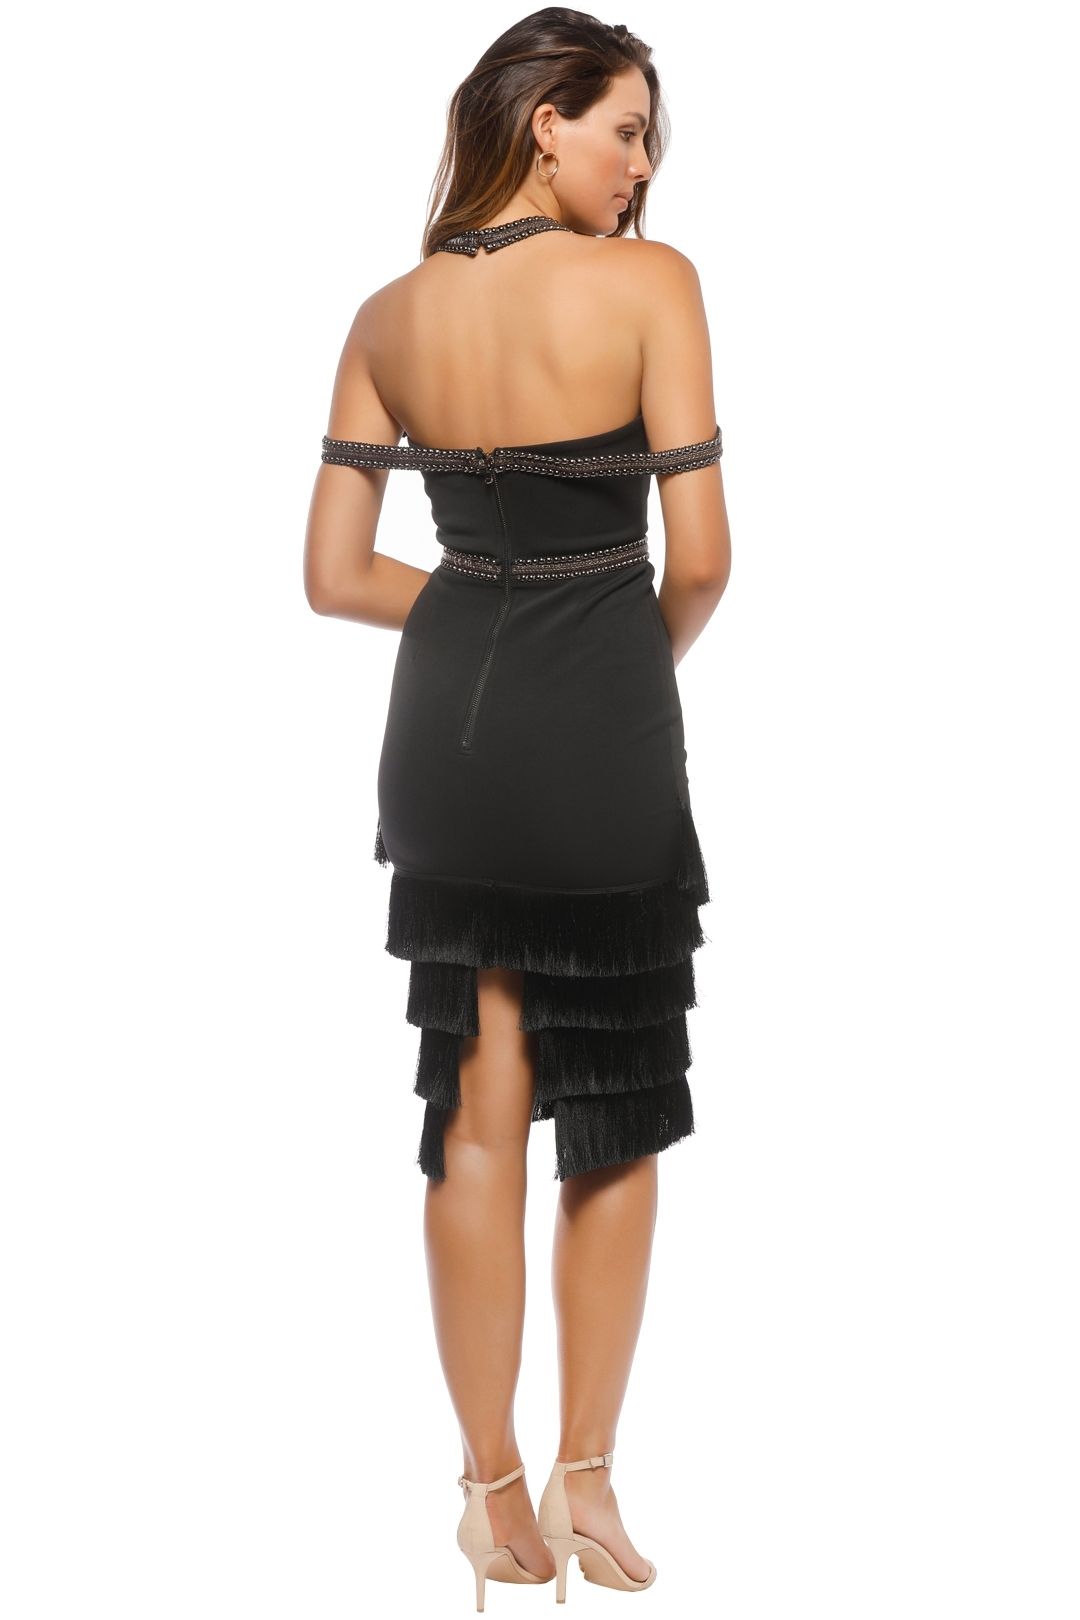 Eliya - Sphynx Dress - Black - Back